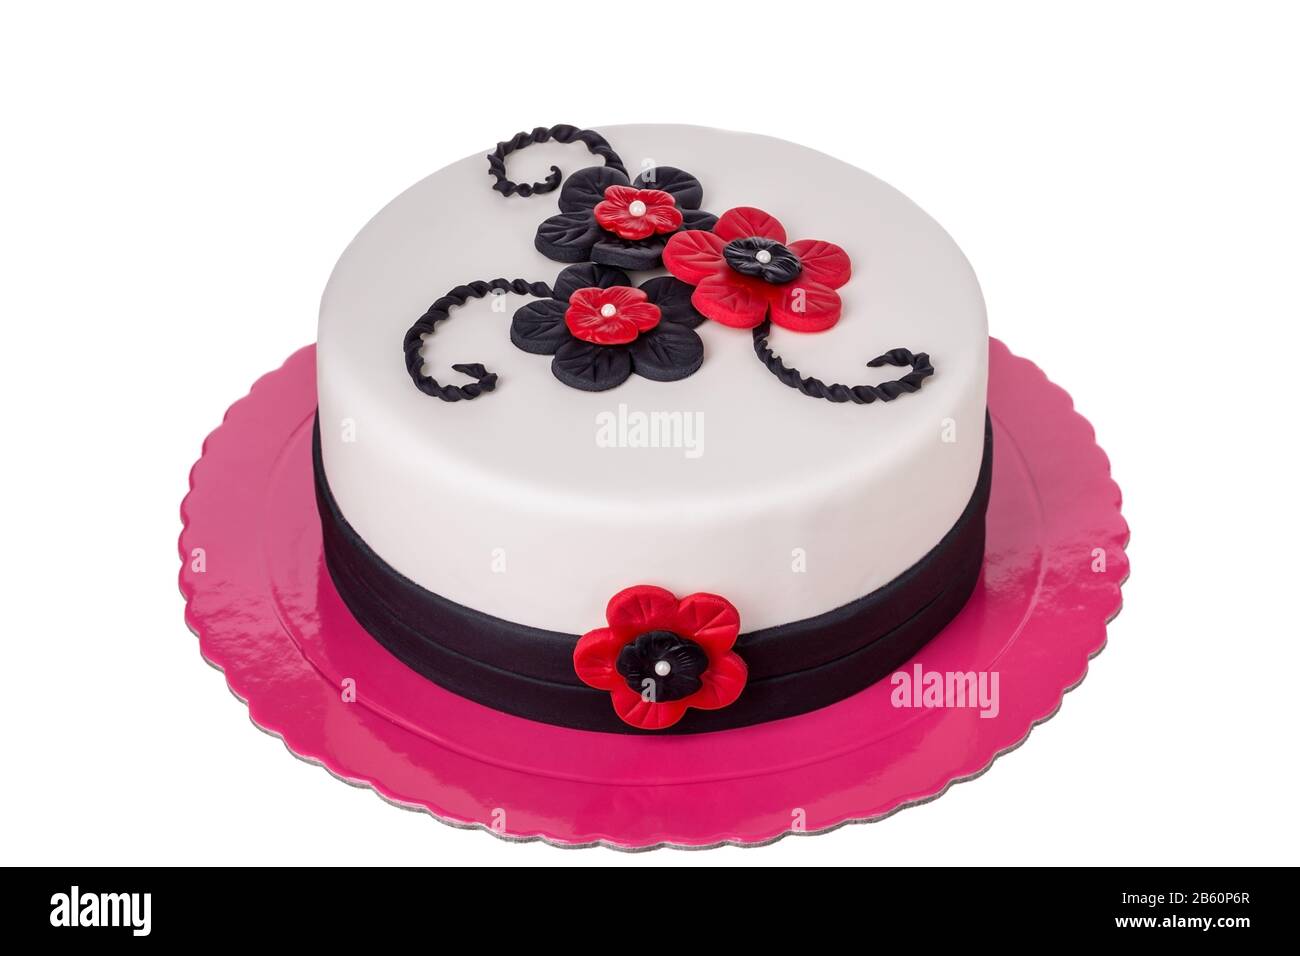 Gâteau d'anniversaire à base de sucre pâtes fleurs rouges. Le jour de l' anniversaire Photo Stock - Alamy